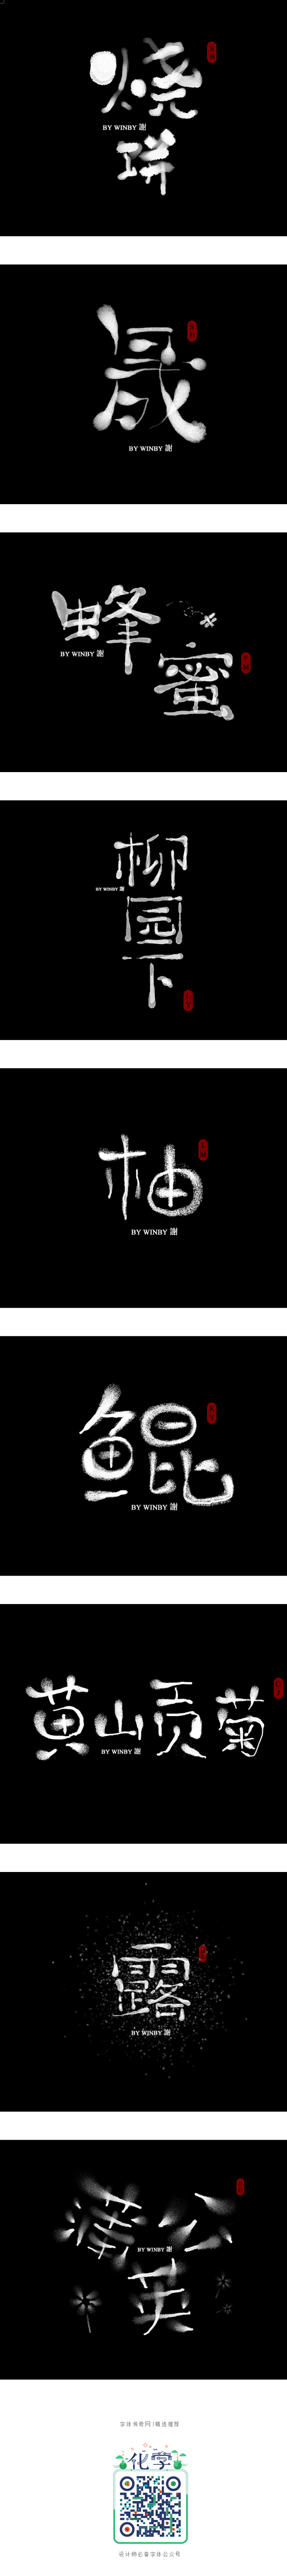 《杂字集》-字体传奇网-中国首个字体品牌...